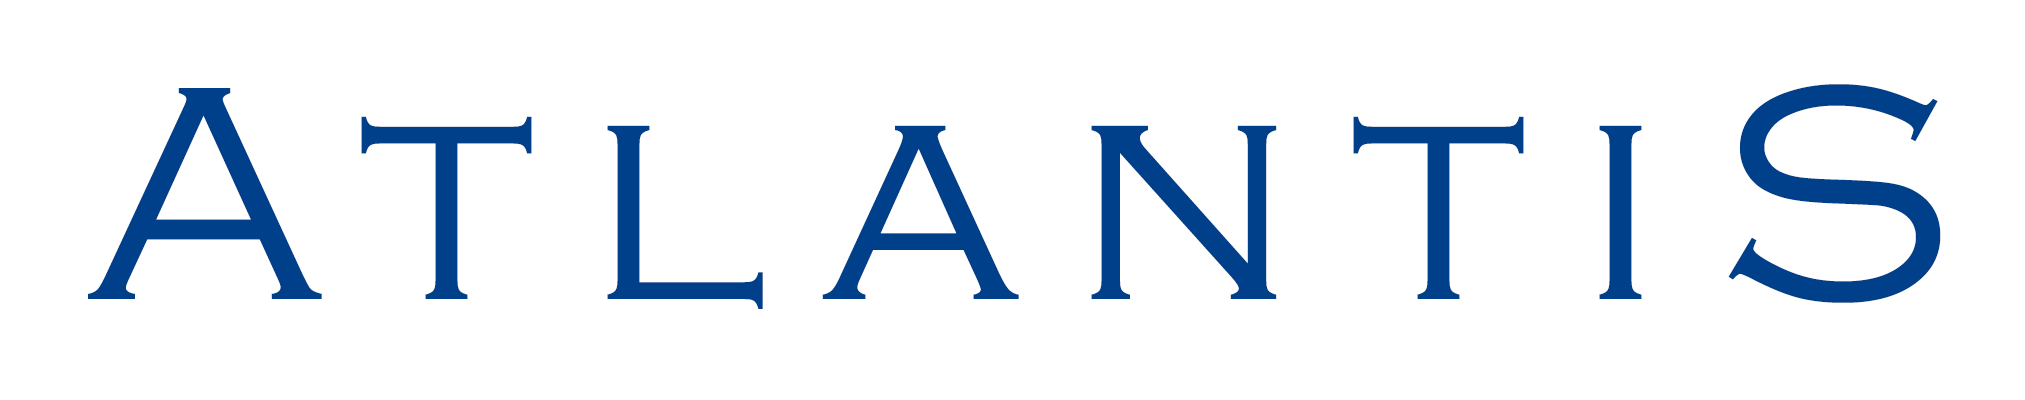 Atlantis Logo - Atlantis Logos